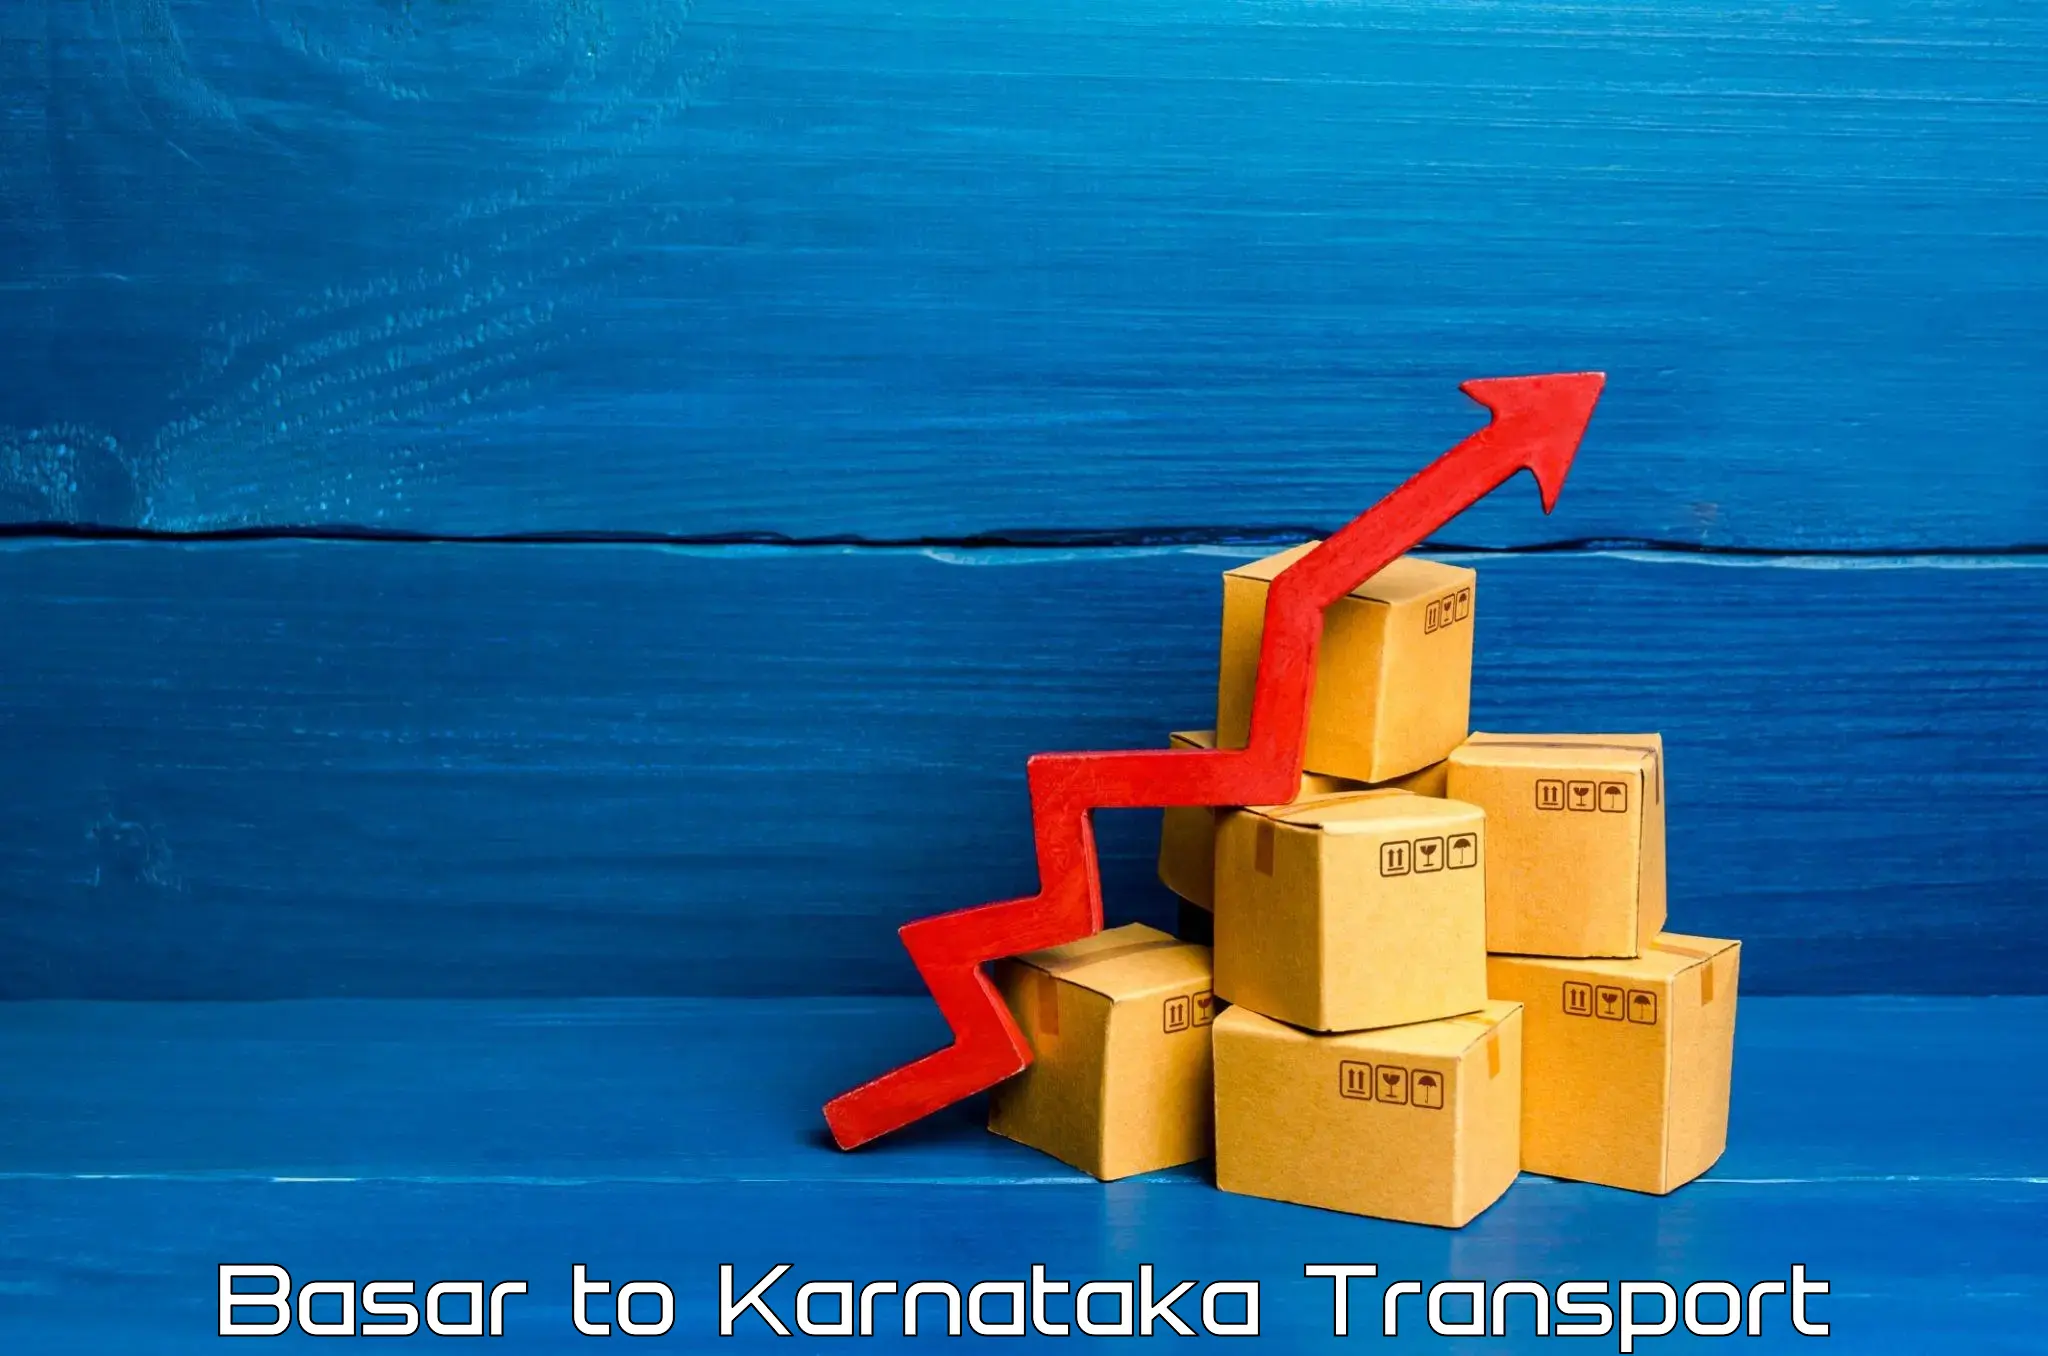 Transport services Basar to Karnataka